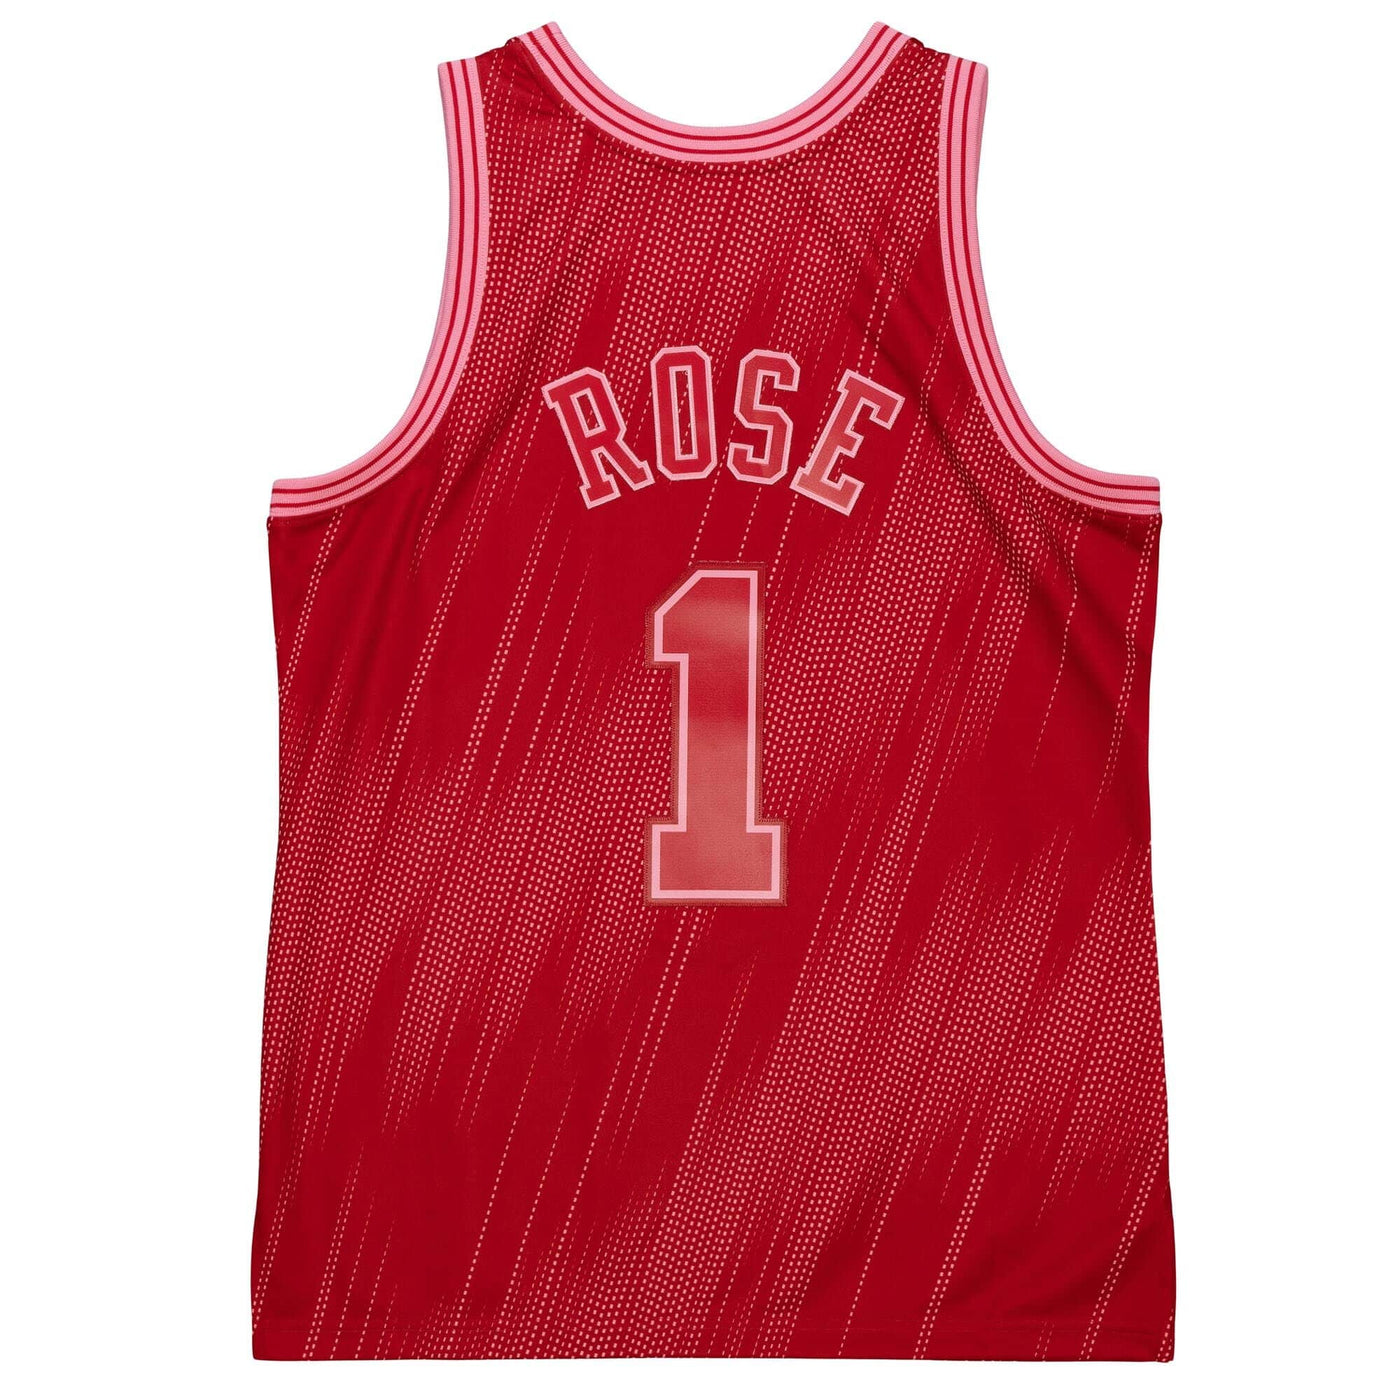 Adidas Men's Chicago Bulls 'Derrick Rose' NBA Jersey - Red